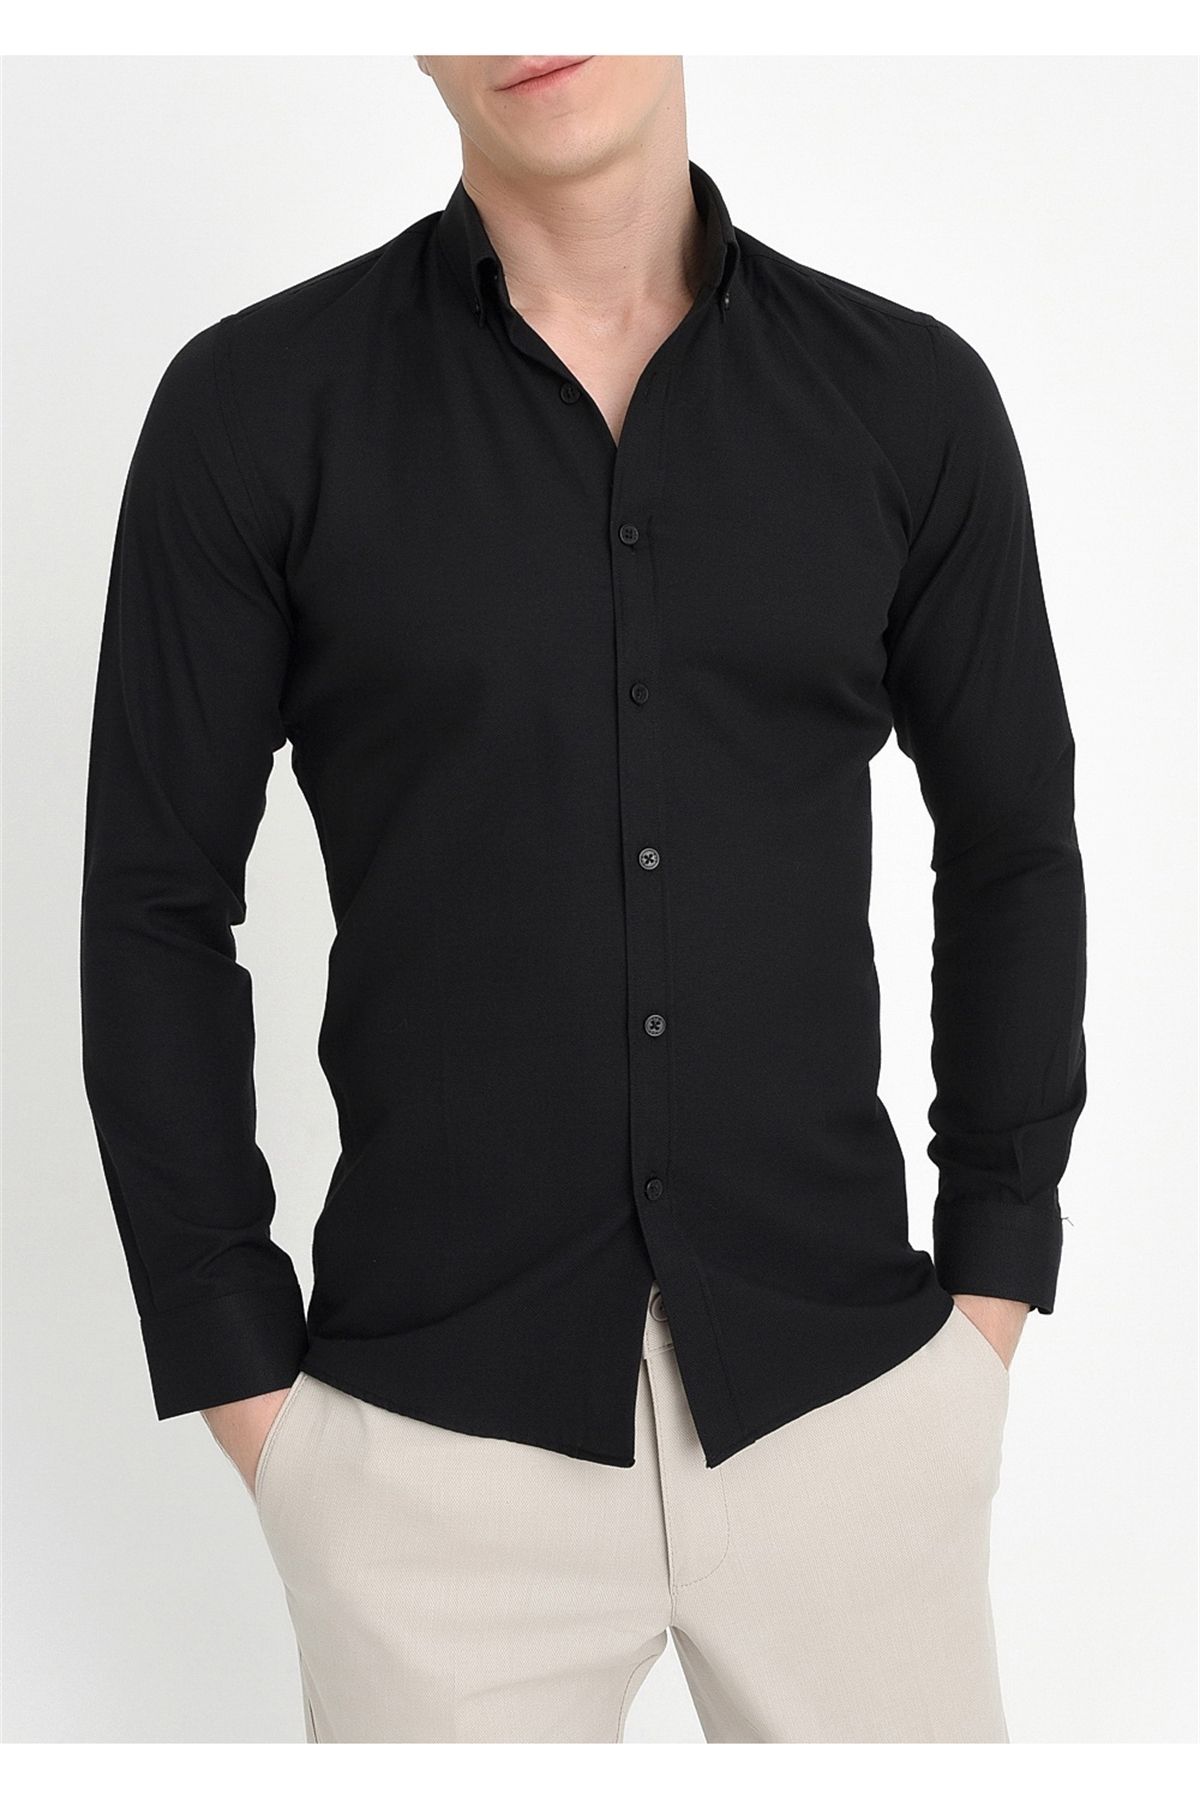 Efor Gk 560 Slim Fit Siyah Klasik Gömlek